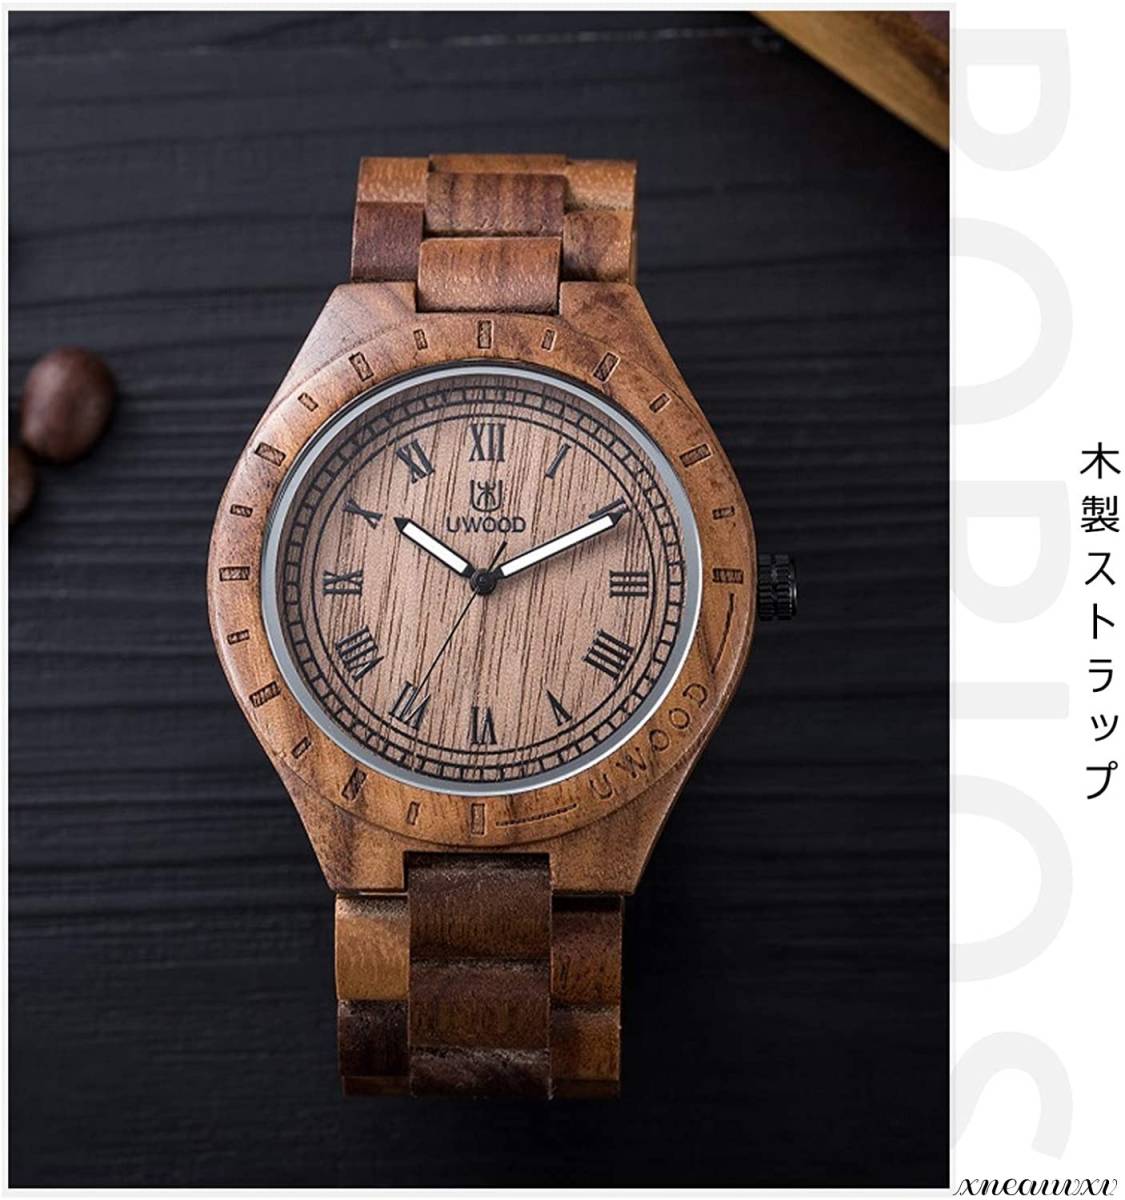 アンティーク風 木製腕時計 ブラウン 日本製 クオーツ メンズ 天然木 木製 ウォッチ カジュアル ウッド モダン 男性 腕時計 プレゼント